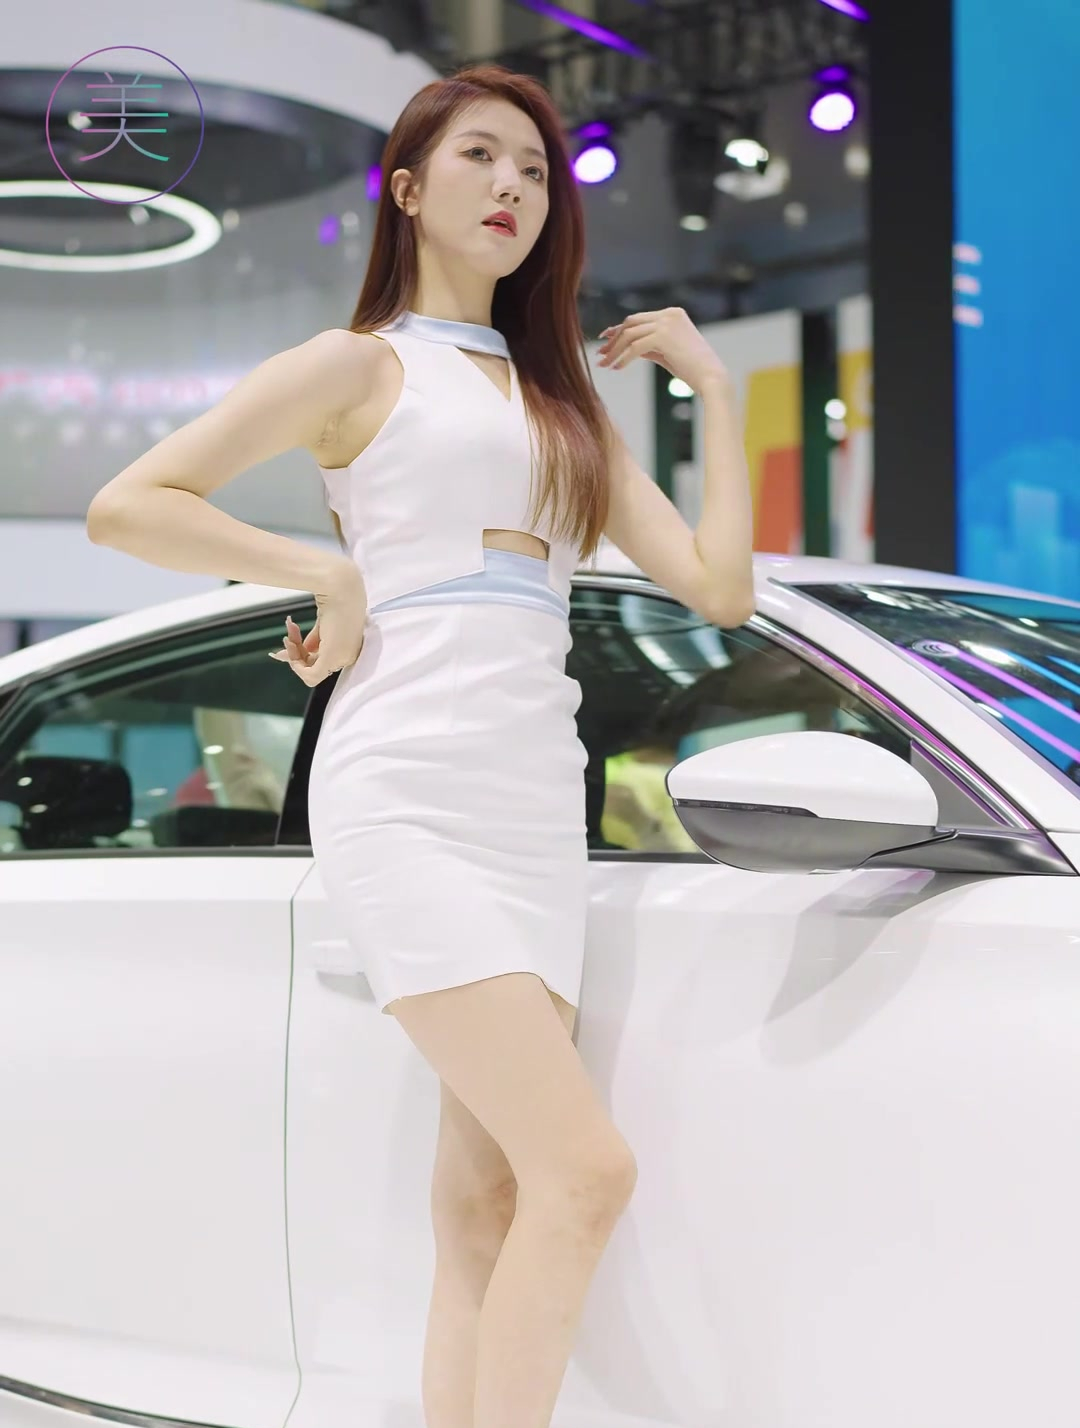 韩国车模 完美身材 大长腿 美女 车展美女 颜值